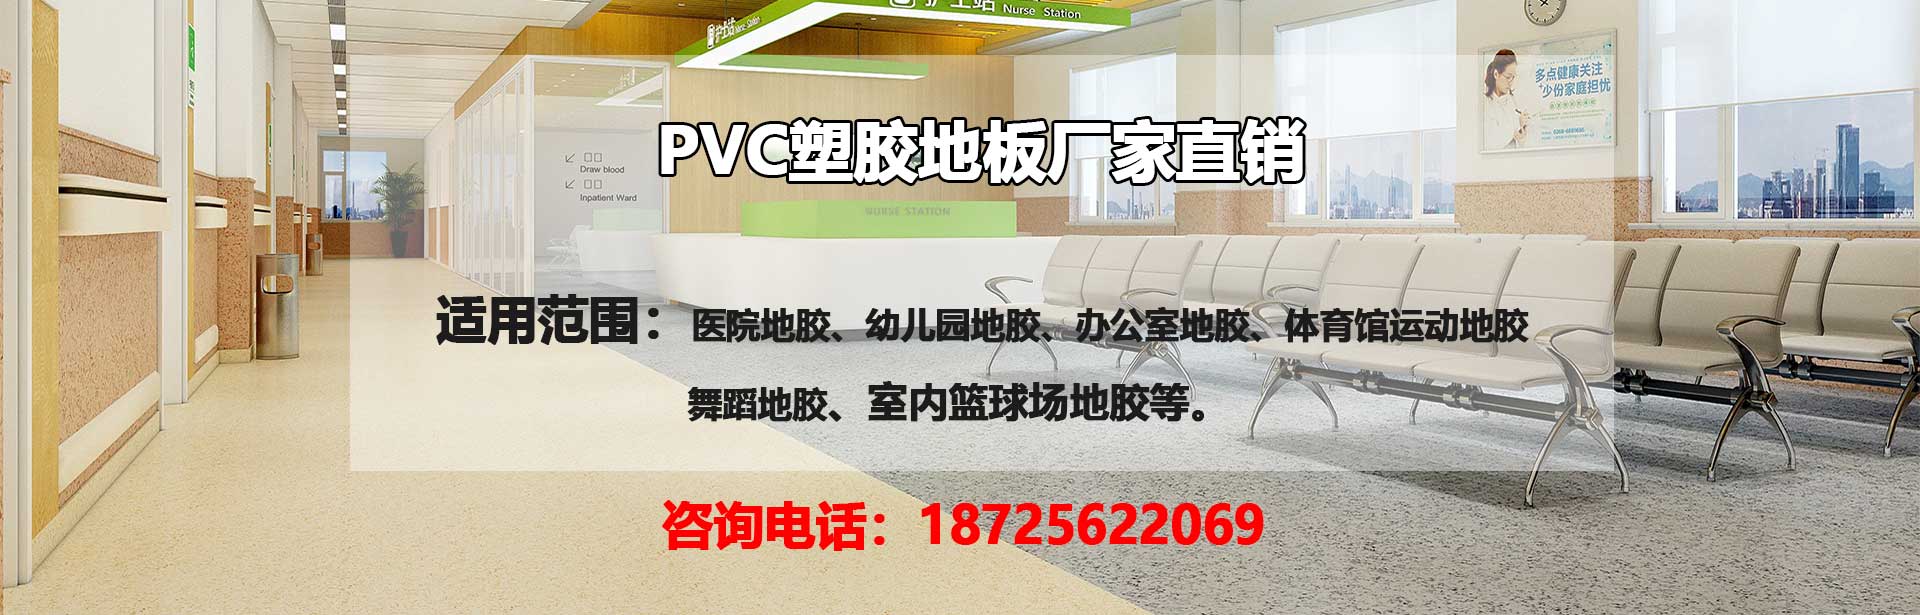 韶关PVC塑胶地板